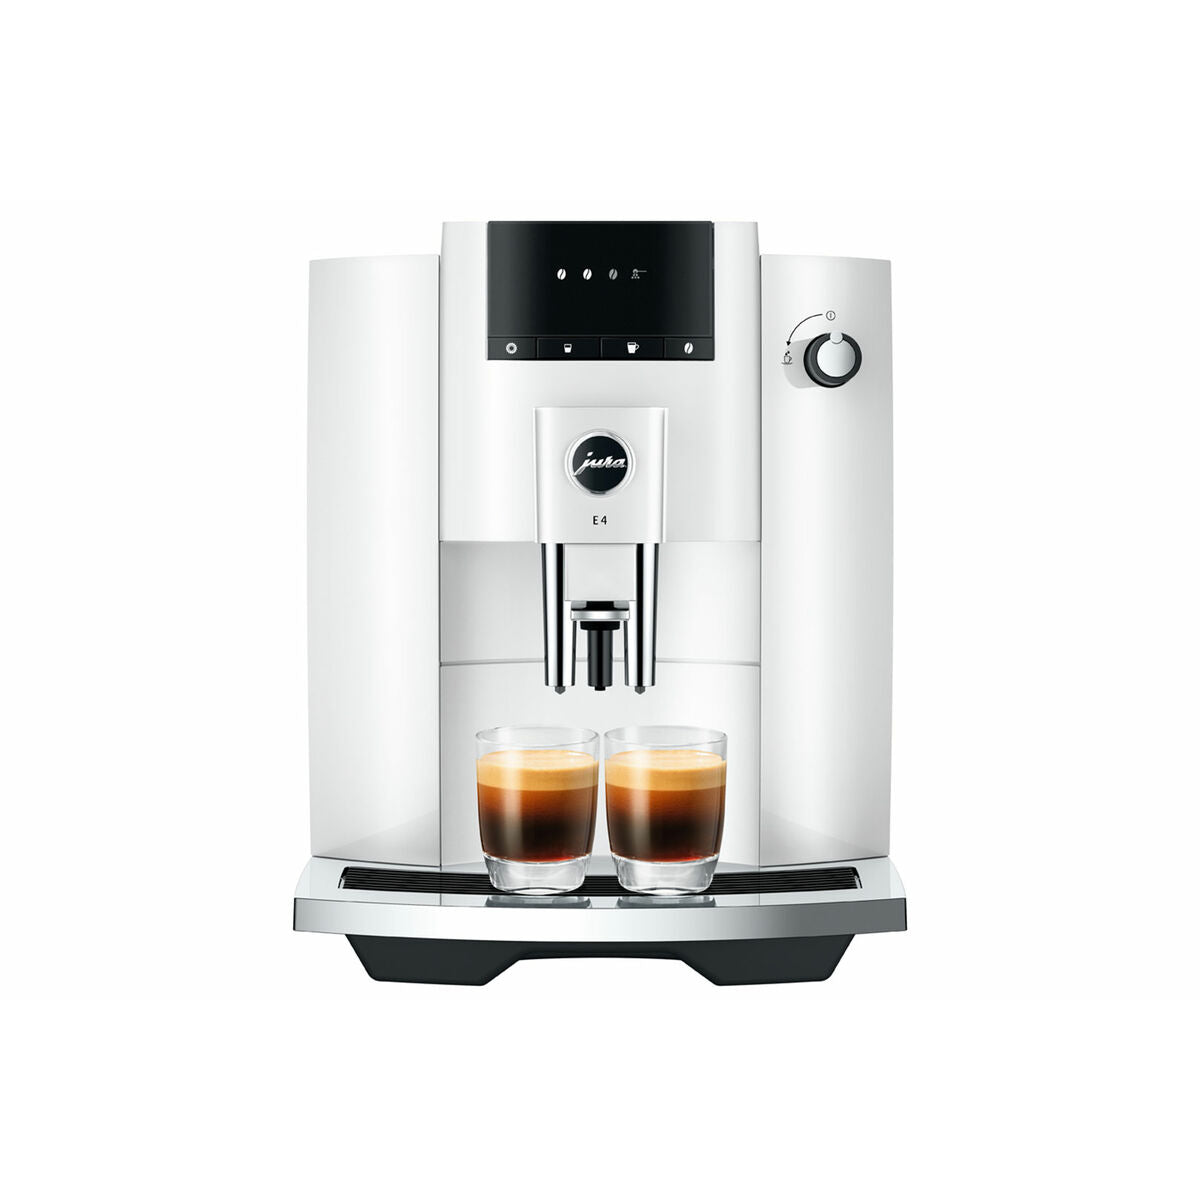 Superautomatische Kaffeemaschine Jura Weiß 1450 W - CA International 